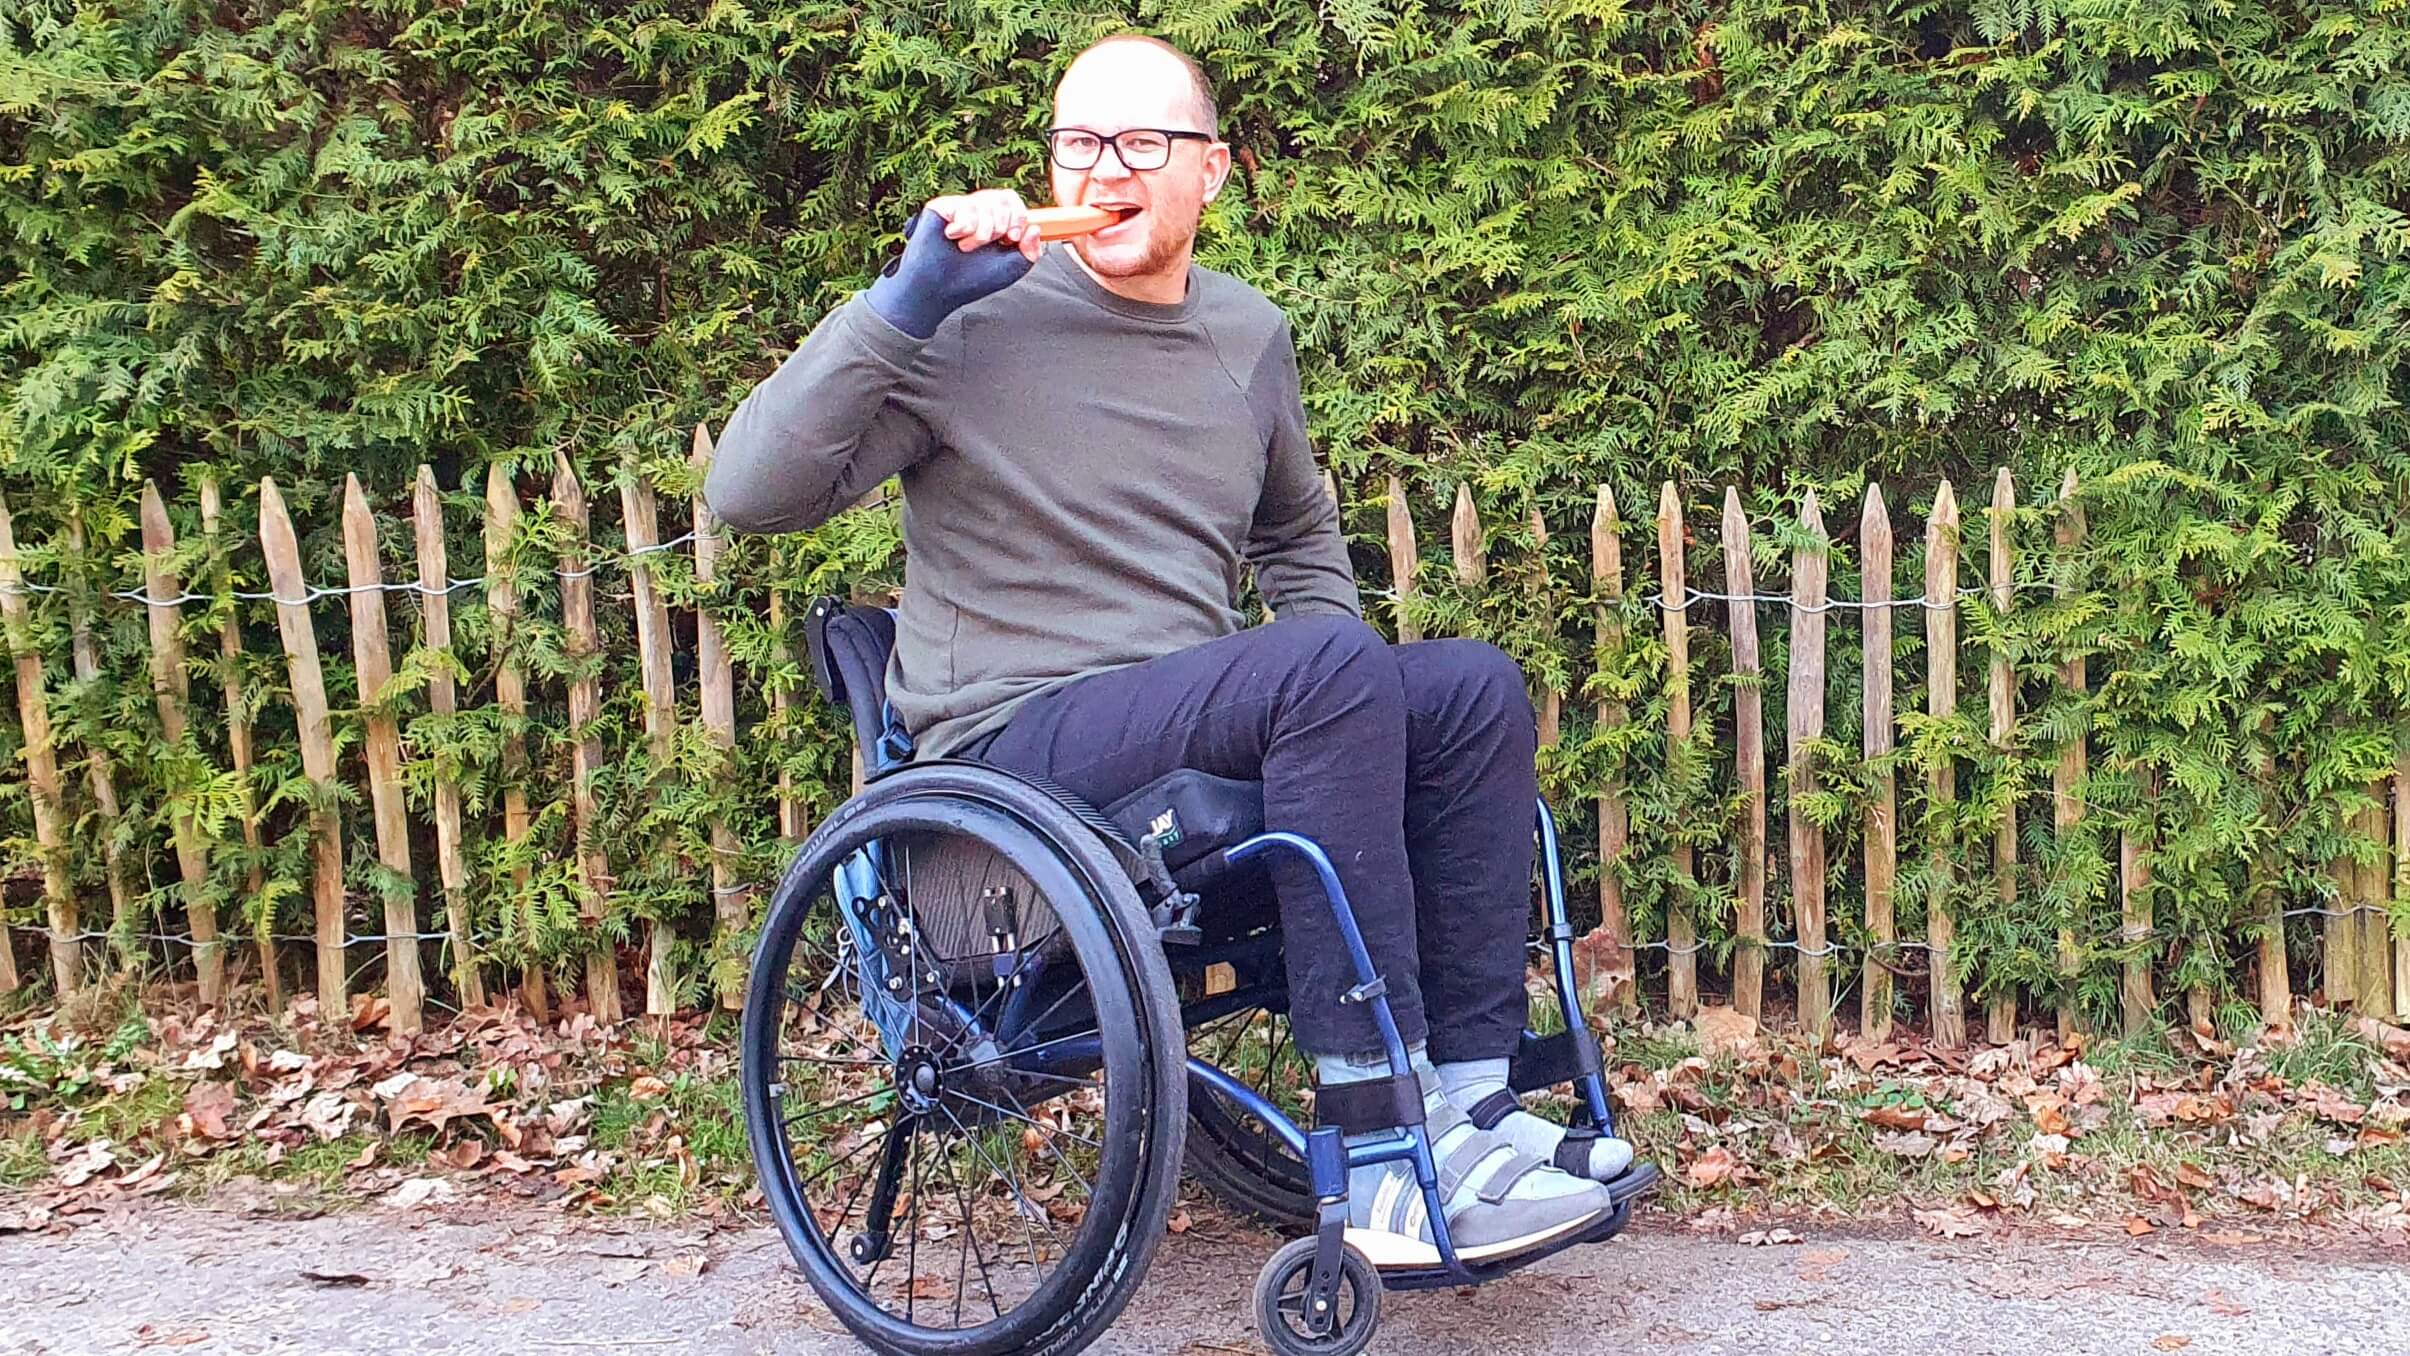 Foto van een man in een maatwerk rolstoel die een wortel eet ter illustratie van hoe raar het voorstellen van een worteldieet is aan een brilgebruiker